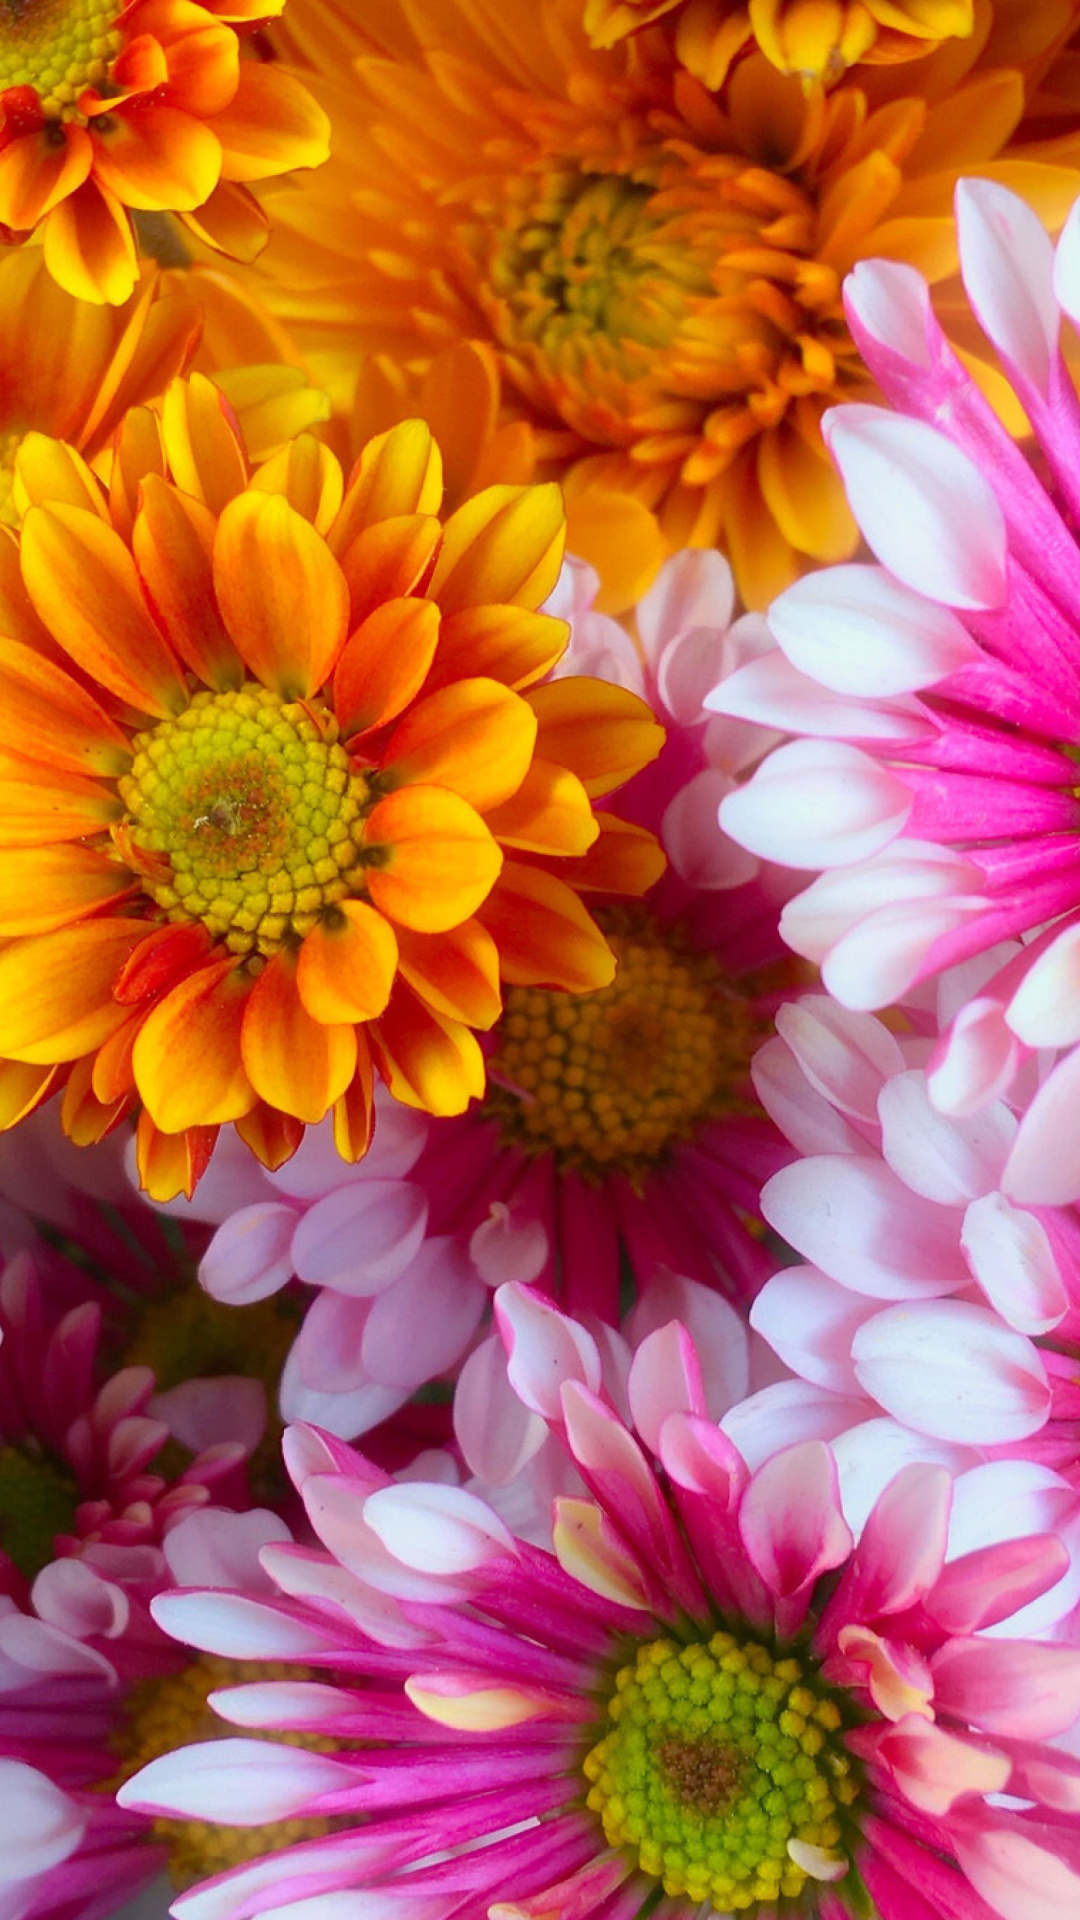 Chrysanthemum bouquet screenshot #1 1080x1920